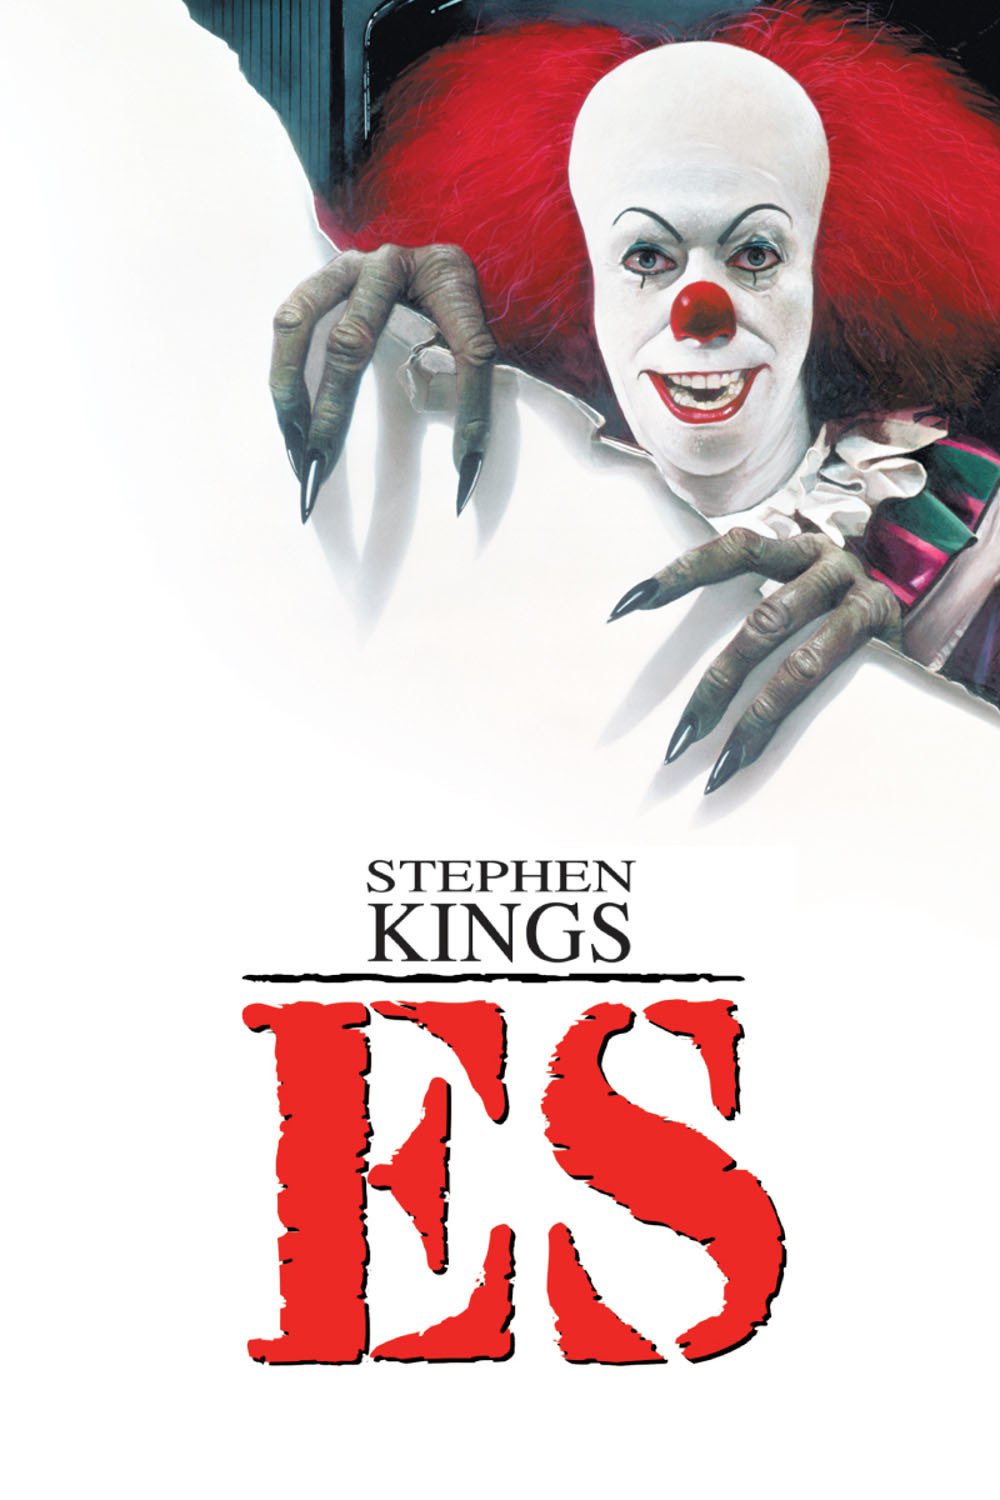 Plakat von "Stephen King's ES"